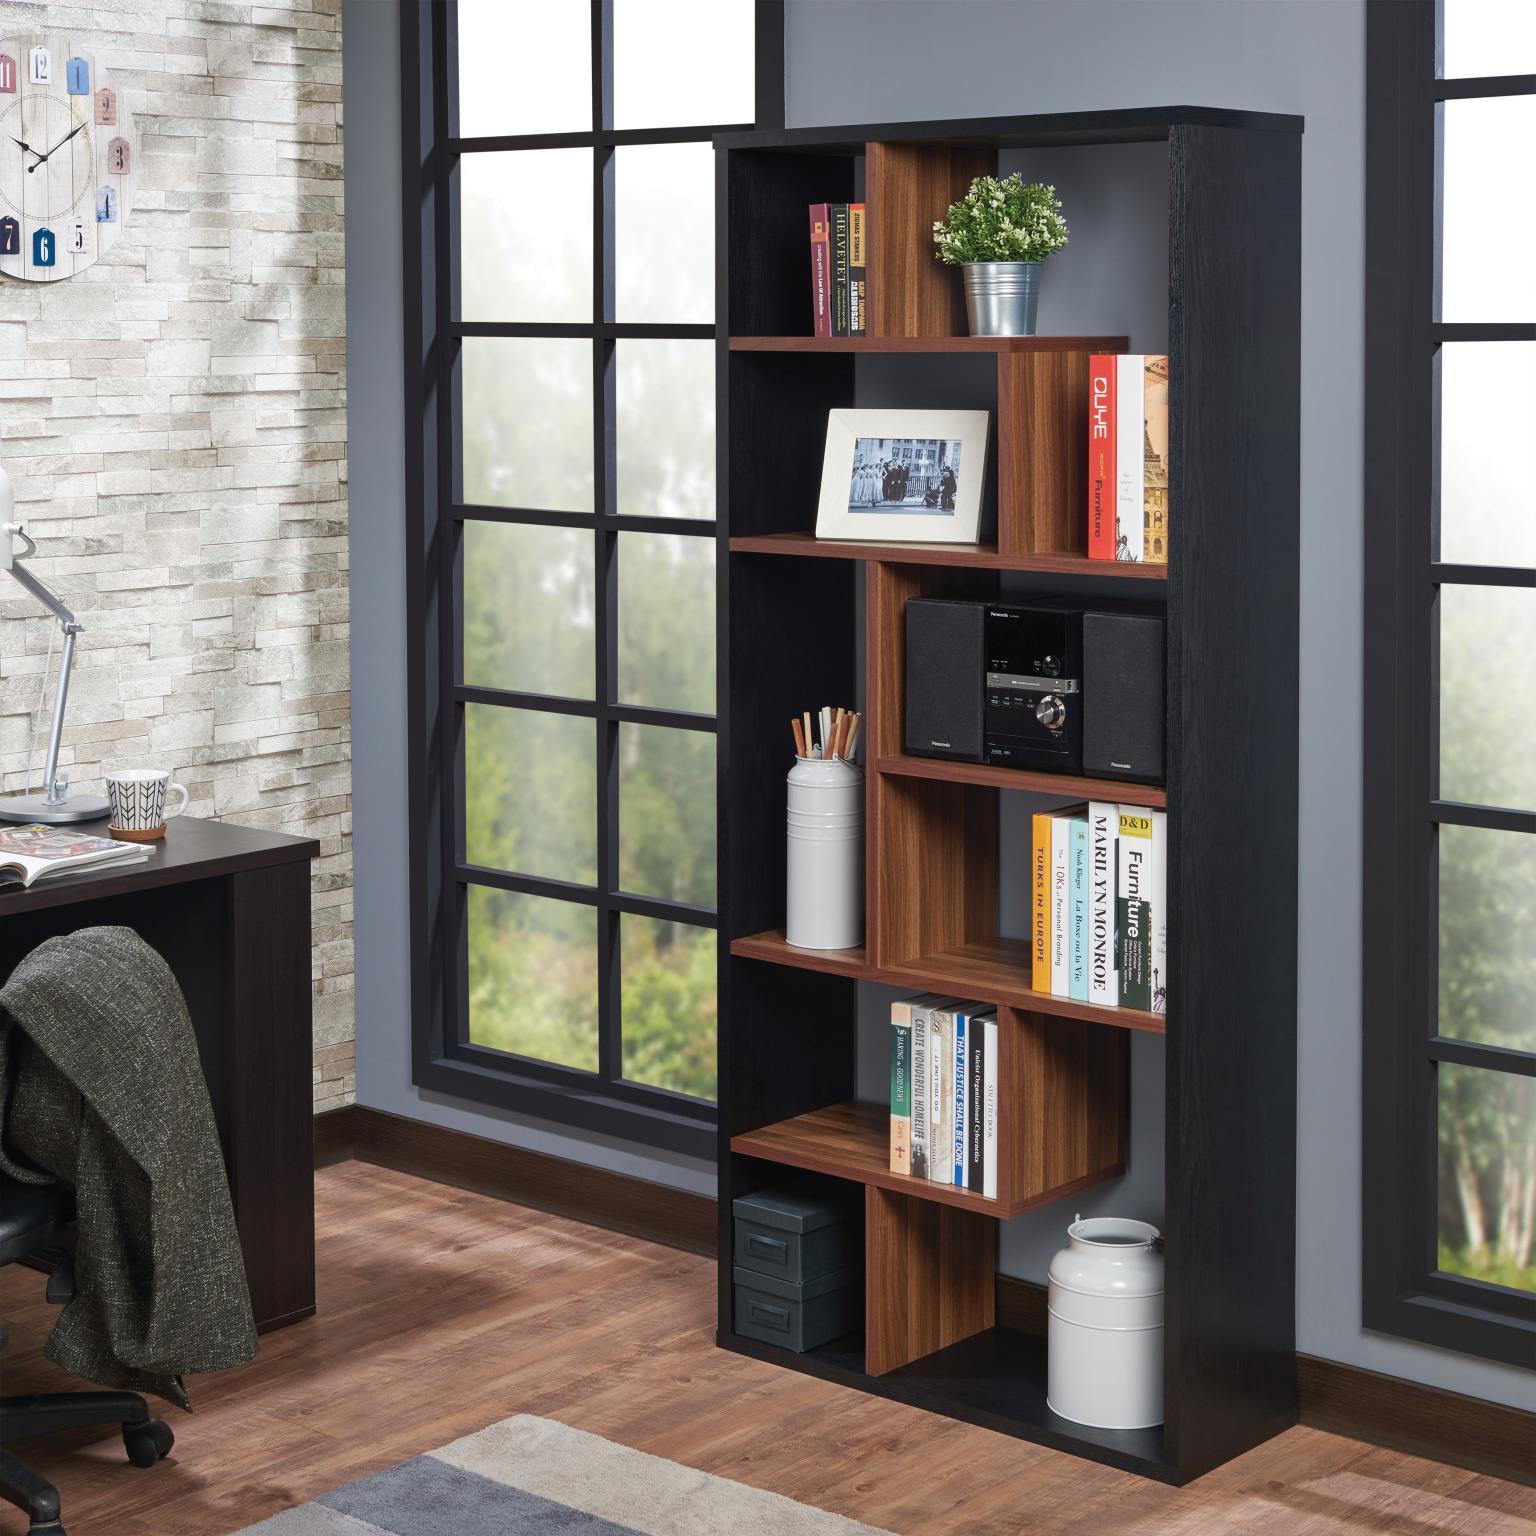 

    
Home Office Black & Walnut Bookcase by Acme Mileta II 92358
